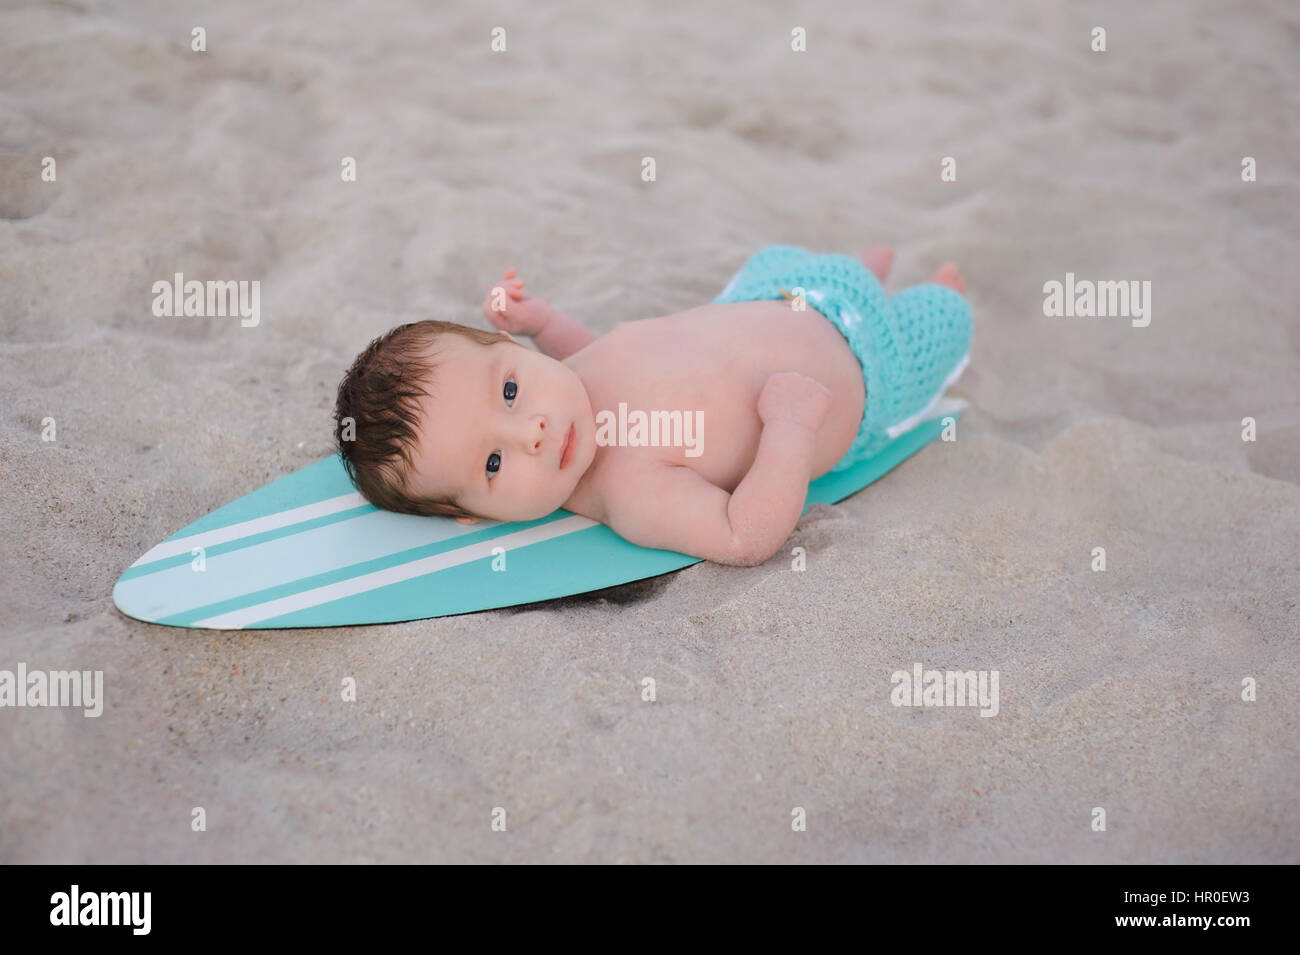 Dos semanas de antigüedad recién nacido niño acostado en un diminuto blanco y azul turquesa, la tabla de surf. Él está usando aqua coloreado, board shorts y tumbado en una playa de arena Foto de stock